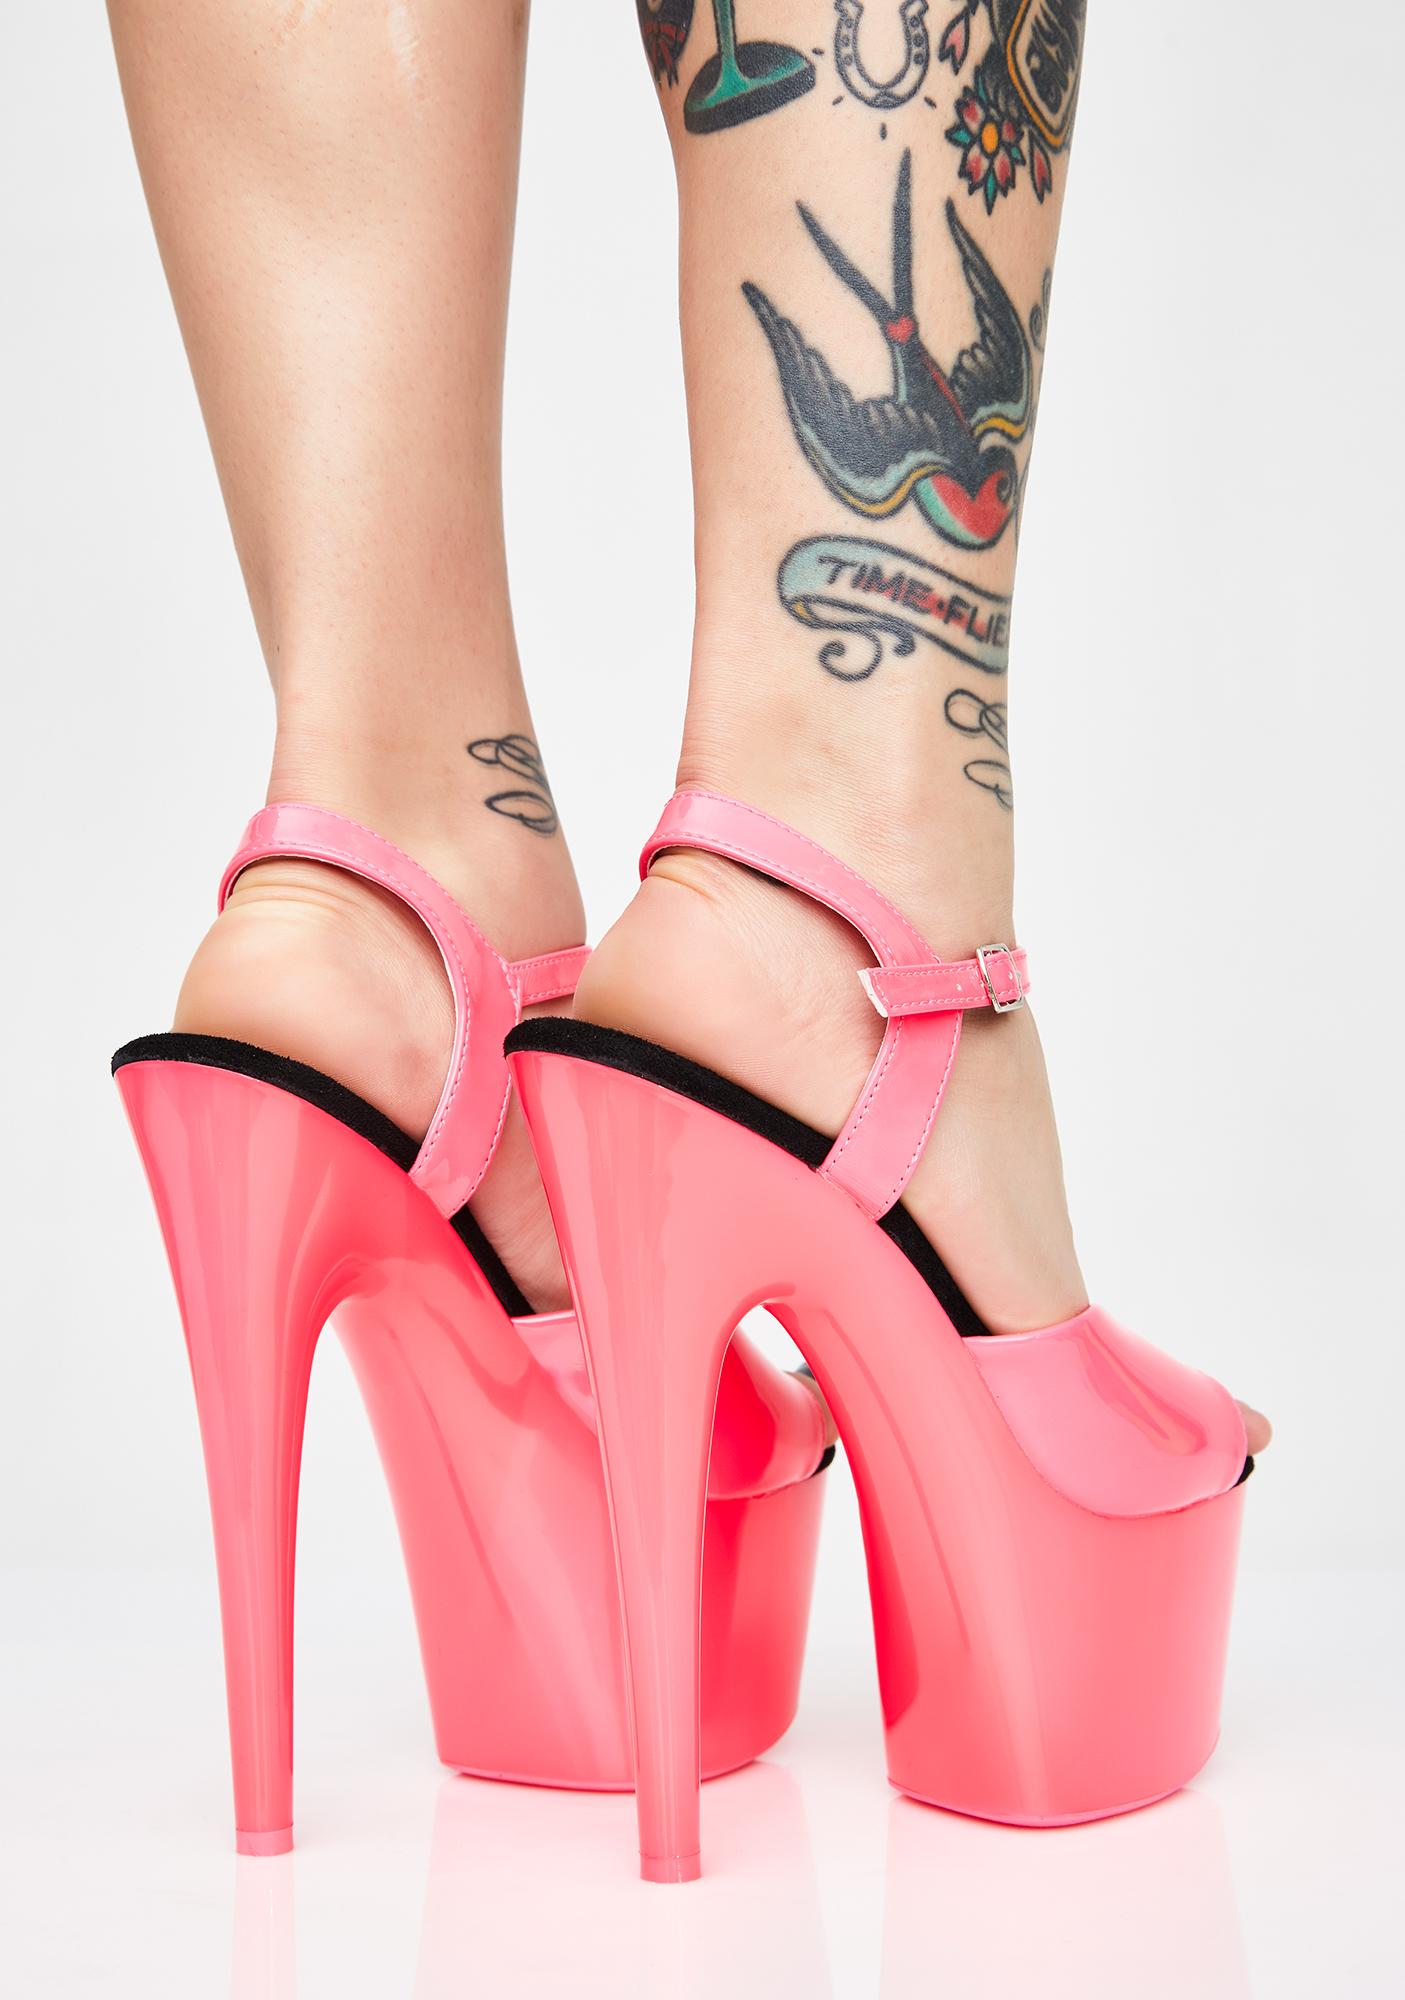 pleaser heels canada